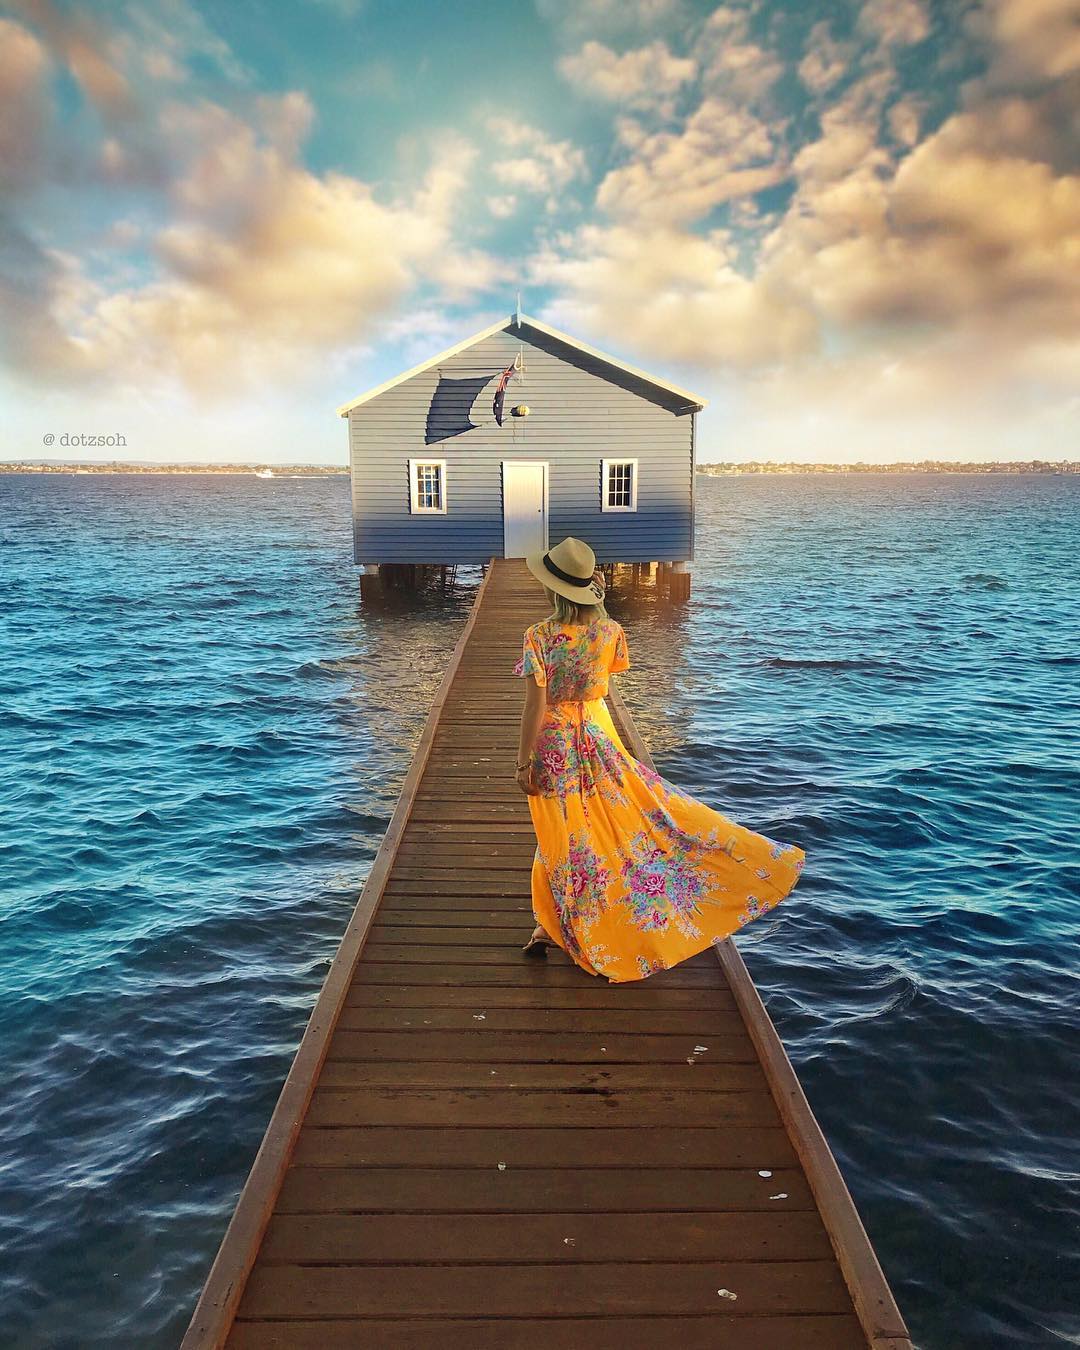 Фото Девушка в шляпе и длинном платье идет по мостику к домику над морем, by Dotz Soh